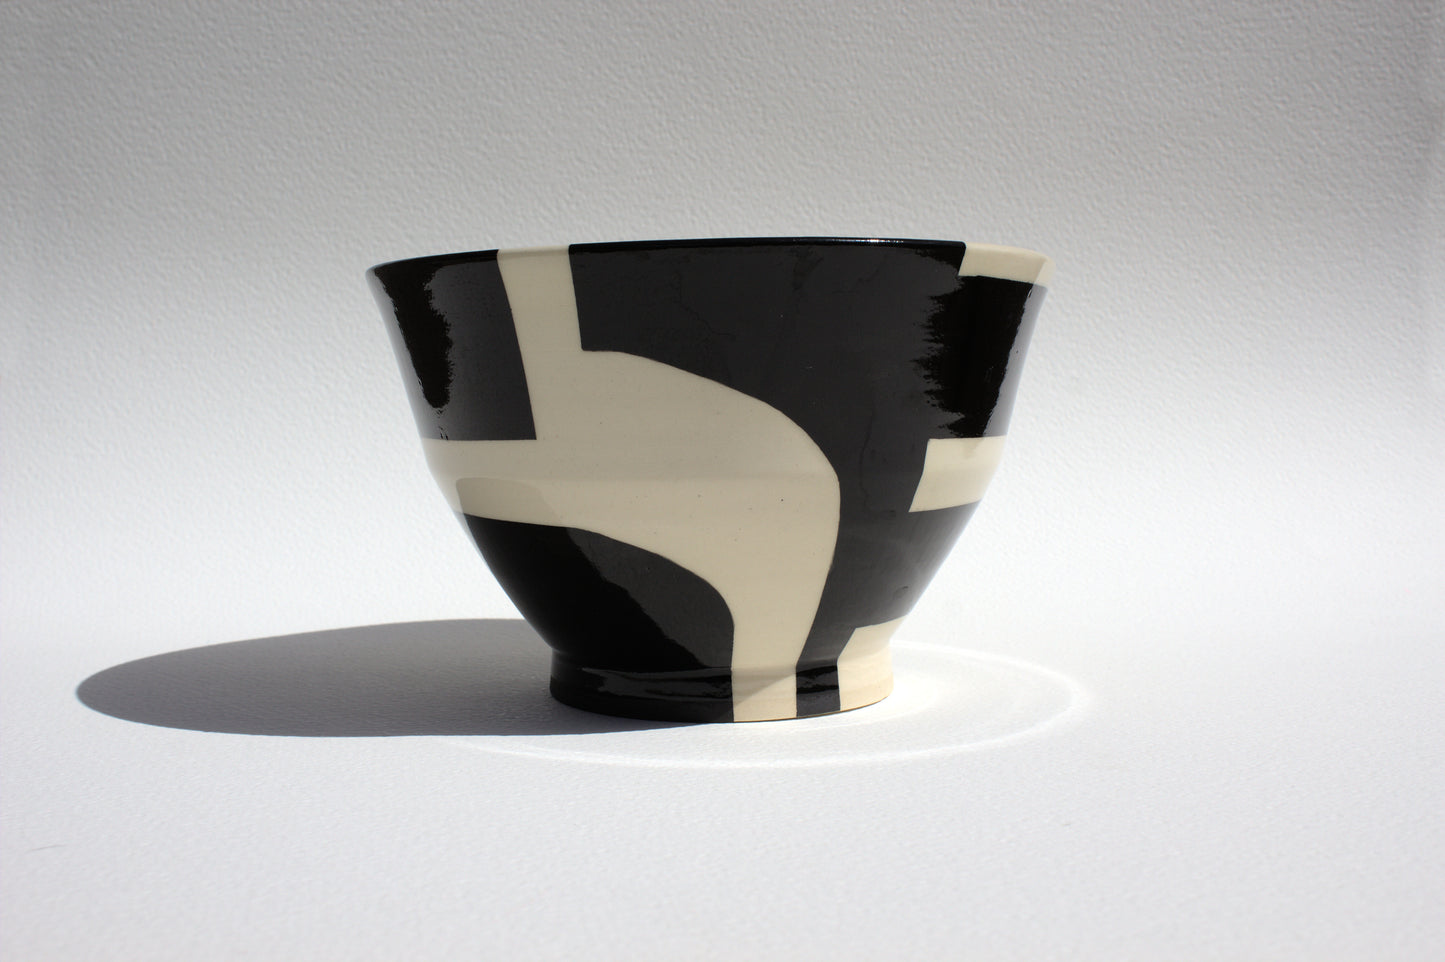 Black Design Bowl - Angled